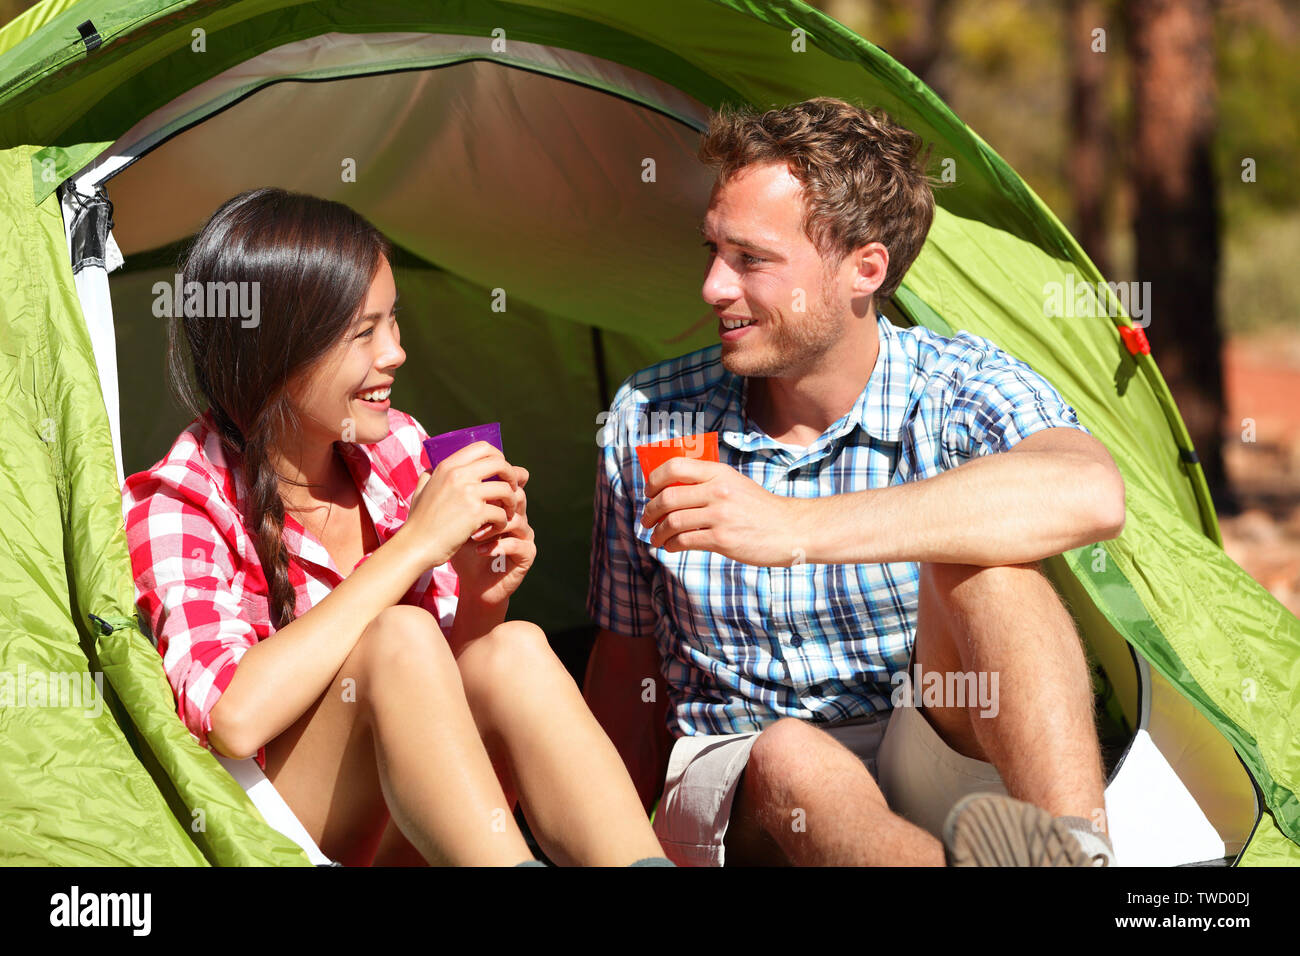 Camping paar Trinkwasser in Zelt Lächeln glücklich draußen in Wald Sonne genießen am Betrachten der Ansicht. Happy gemischtrassiges Paar entspannend nach Aktivität im Freien wandern. Asiatische Frau, kaukasische Mann. Stockfoto